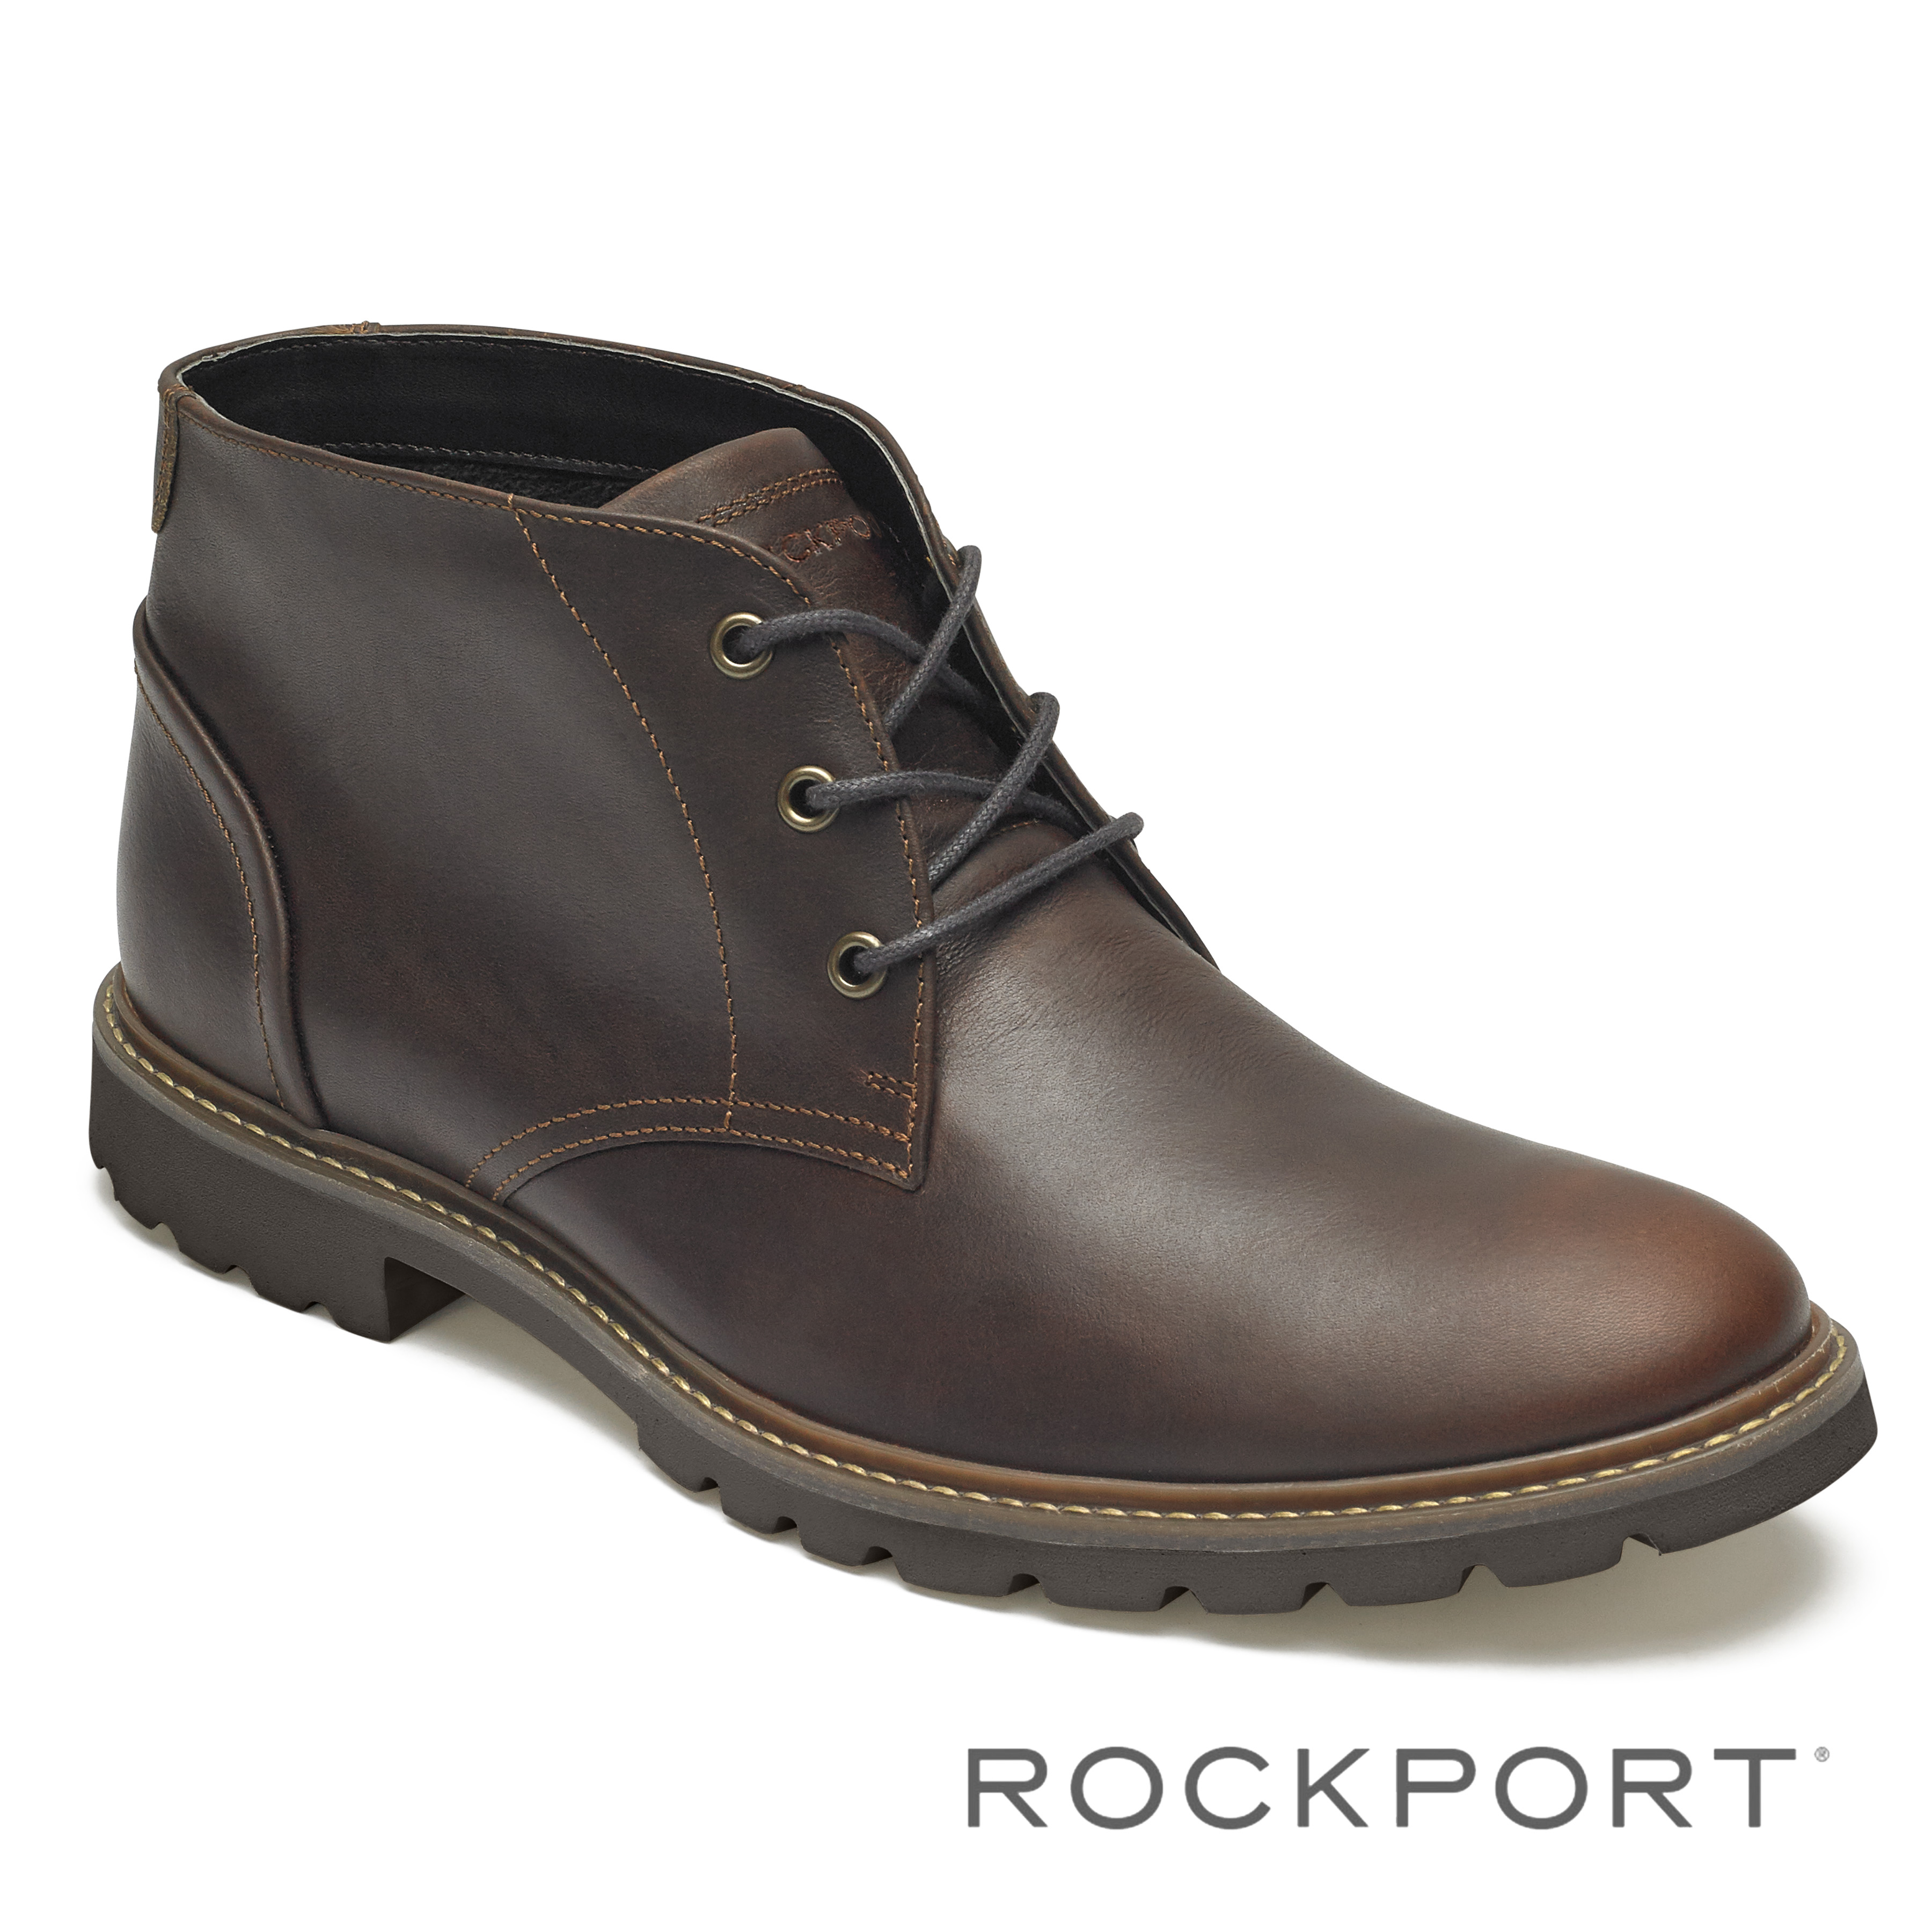 rockport saddle shoes